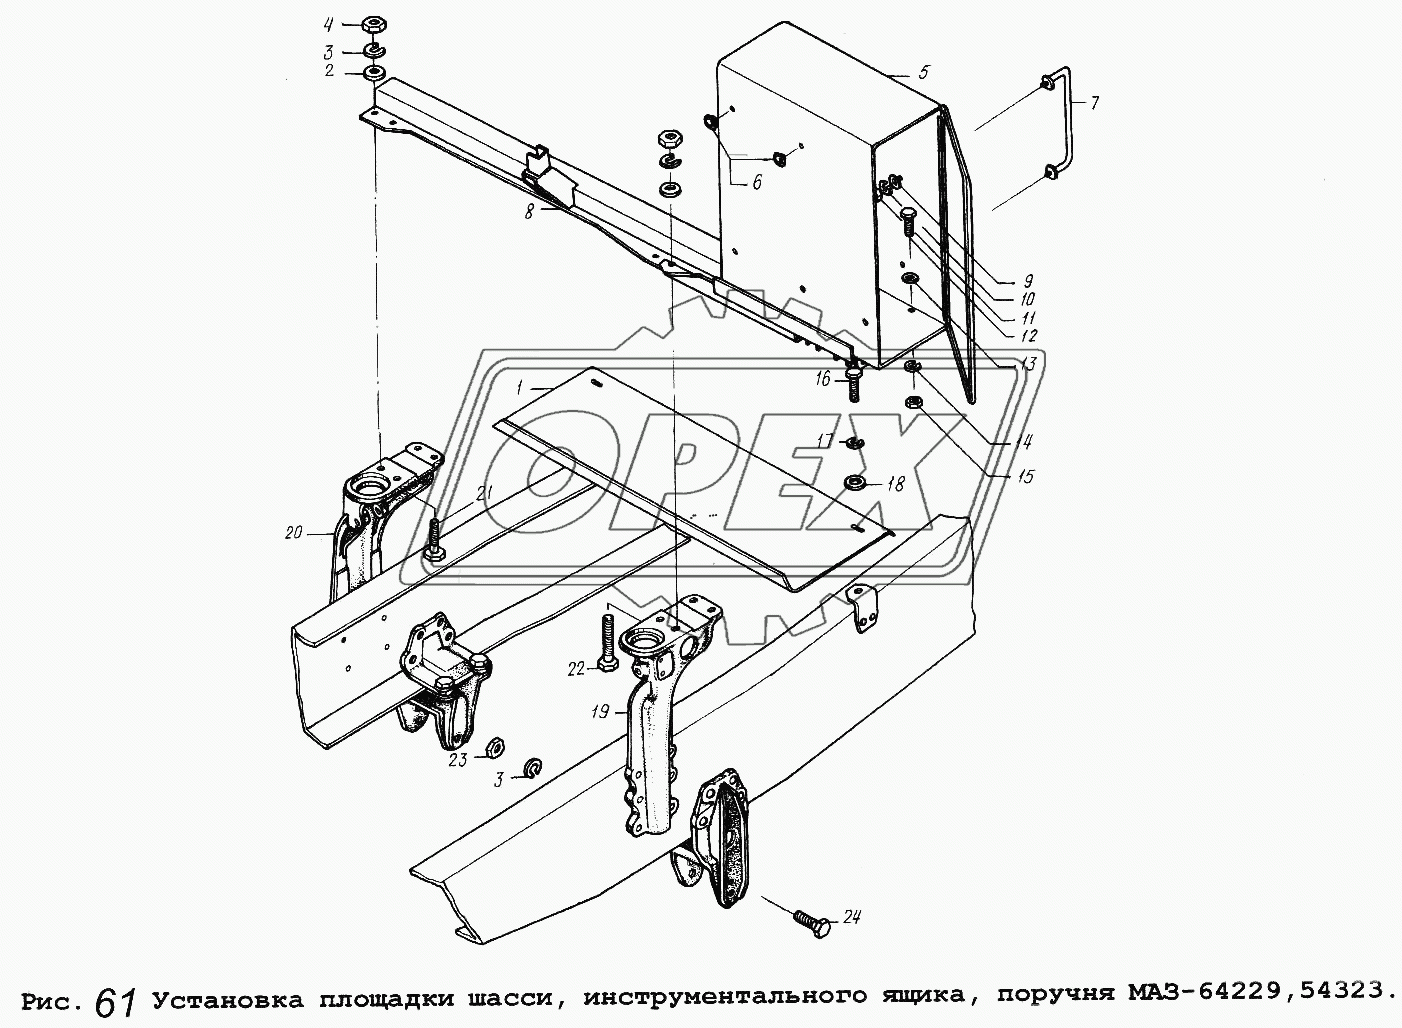 Установка площадки шасси, инструментального ящика, поручня МАЗ-64229,54323